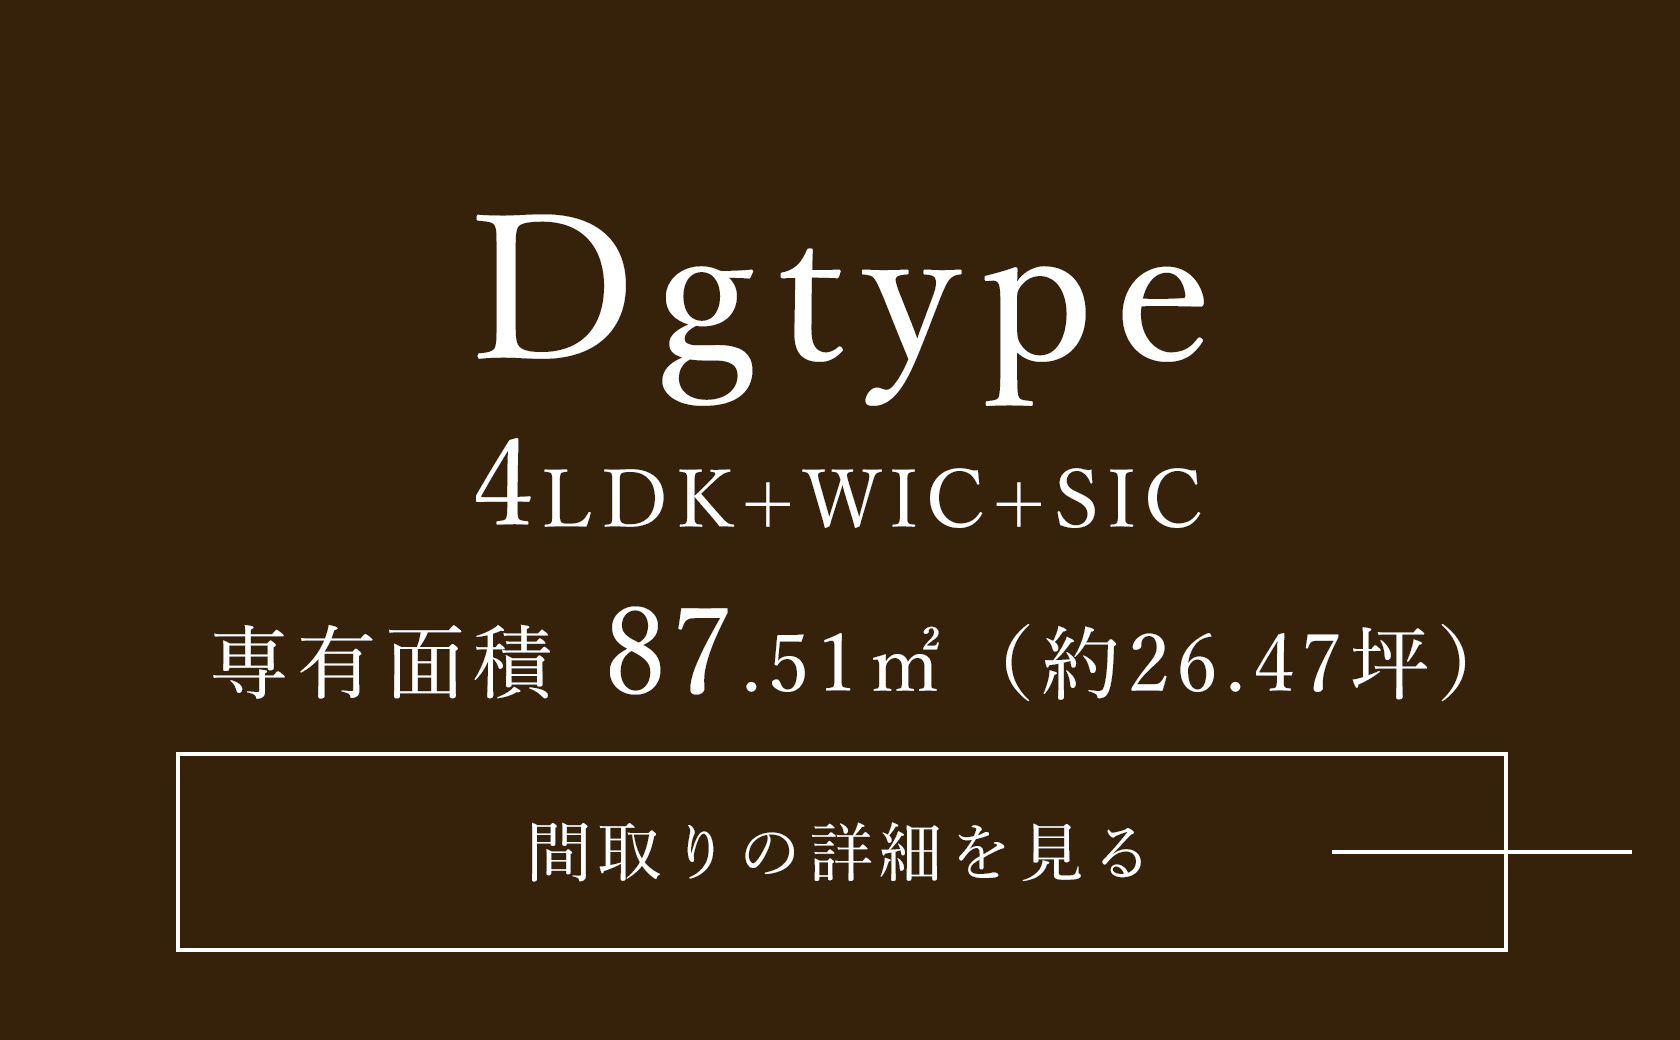 Dg type